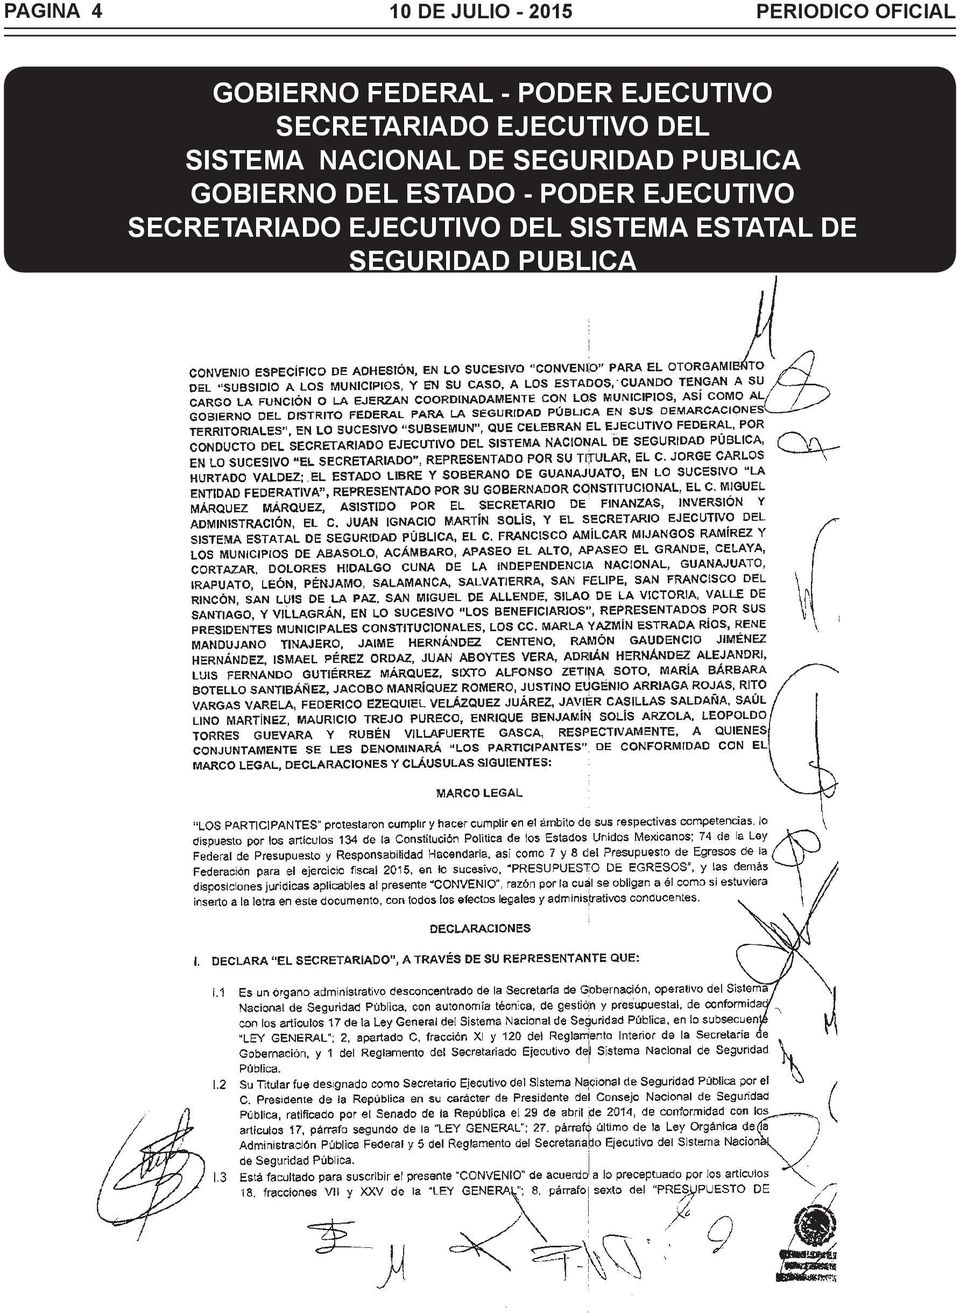 NACIONAL DE SEGURIDAD PUBLICA GOBIERNO DEL ESTADO - PODER